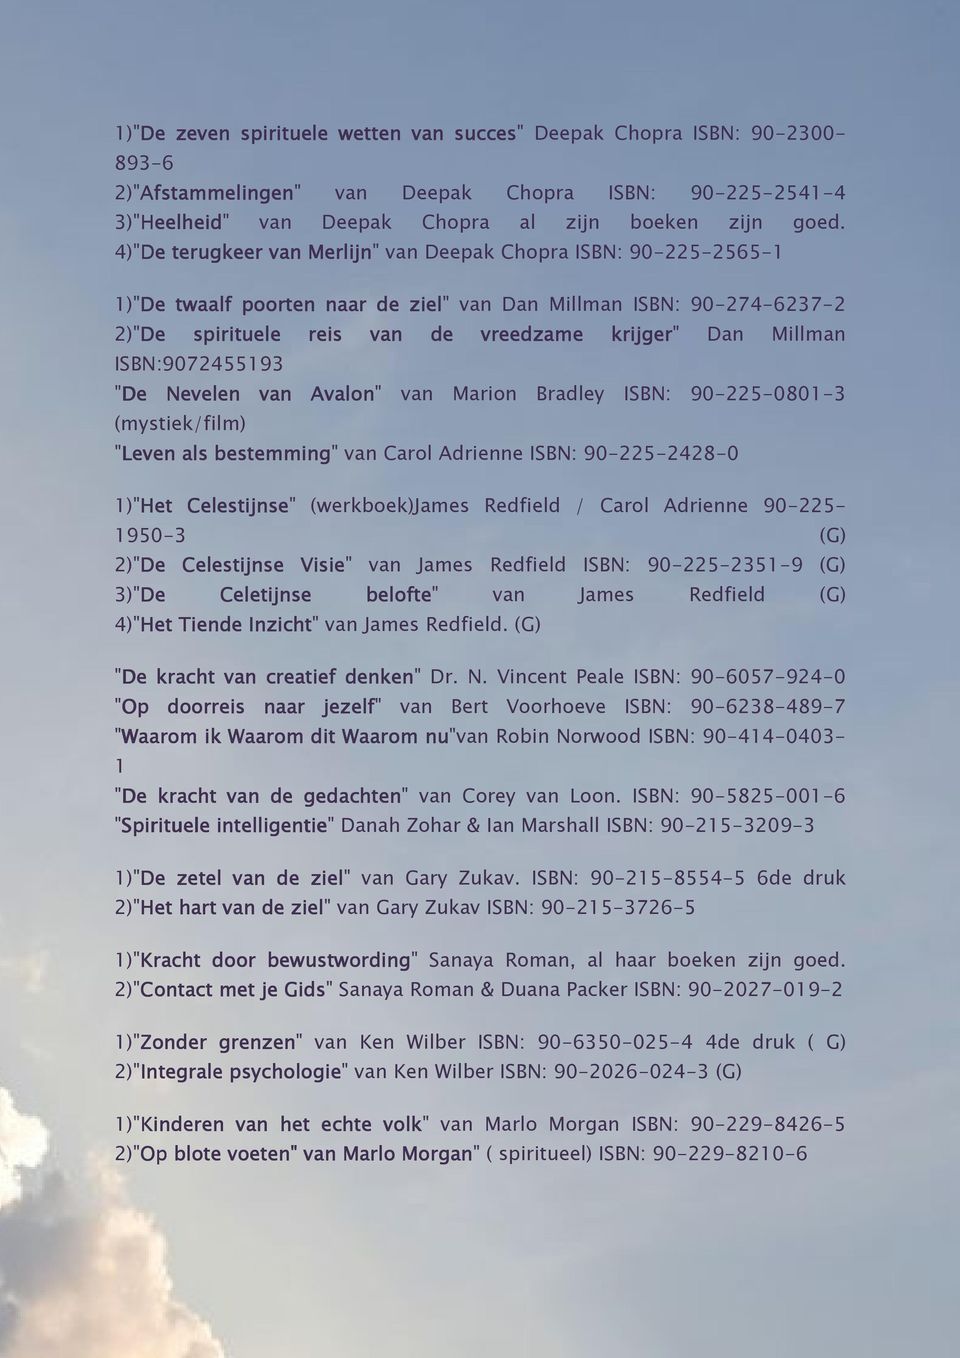 4)"De terugkeer van Merlijn" van Deepak Chopra ISBN: 90-225-2565-1 1)"De twaalf poorten naar de ziel" van Dan Millman ISBN: 90-274-6237-2 2)"De spirituele reis van de vreedzame krijger" Dan Millman